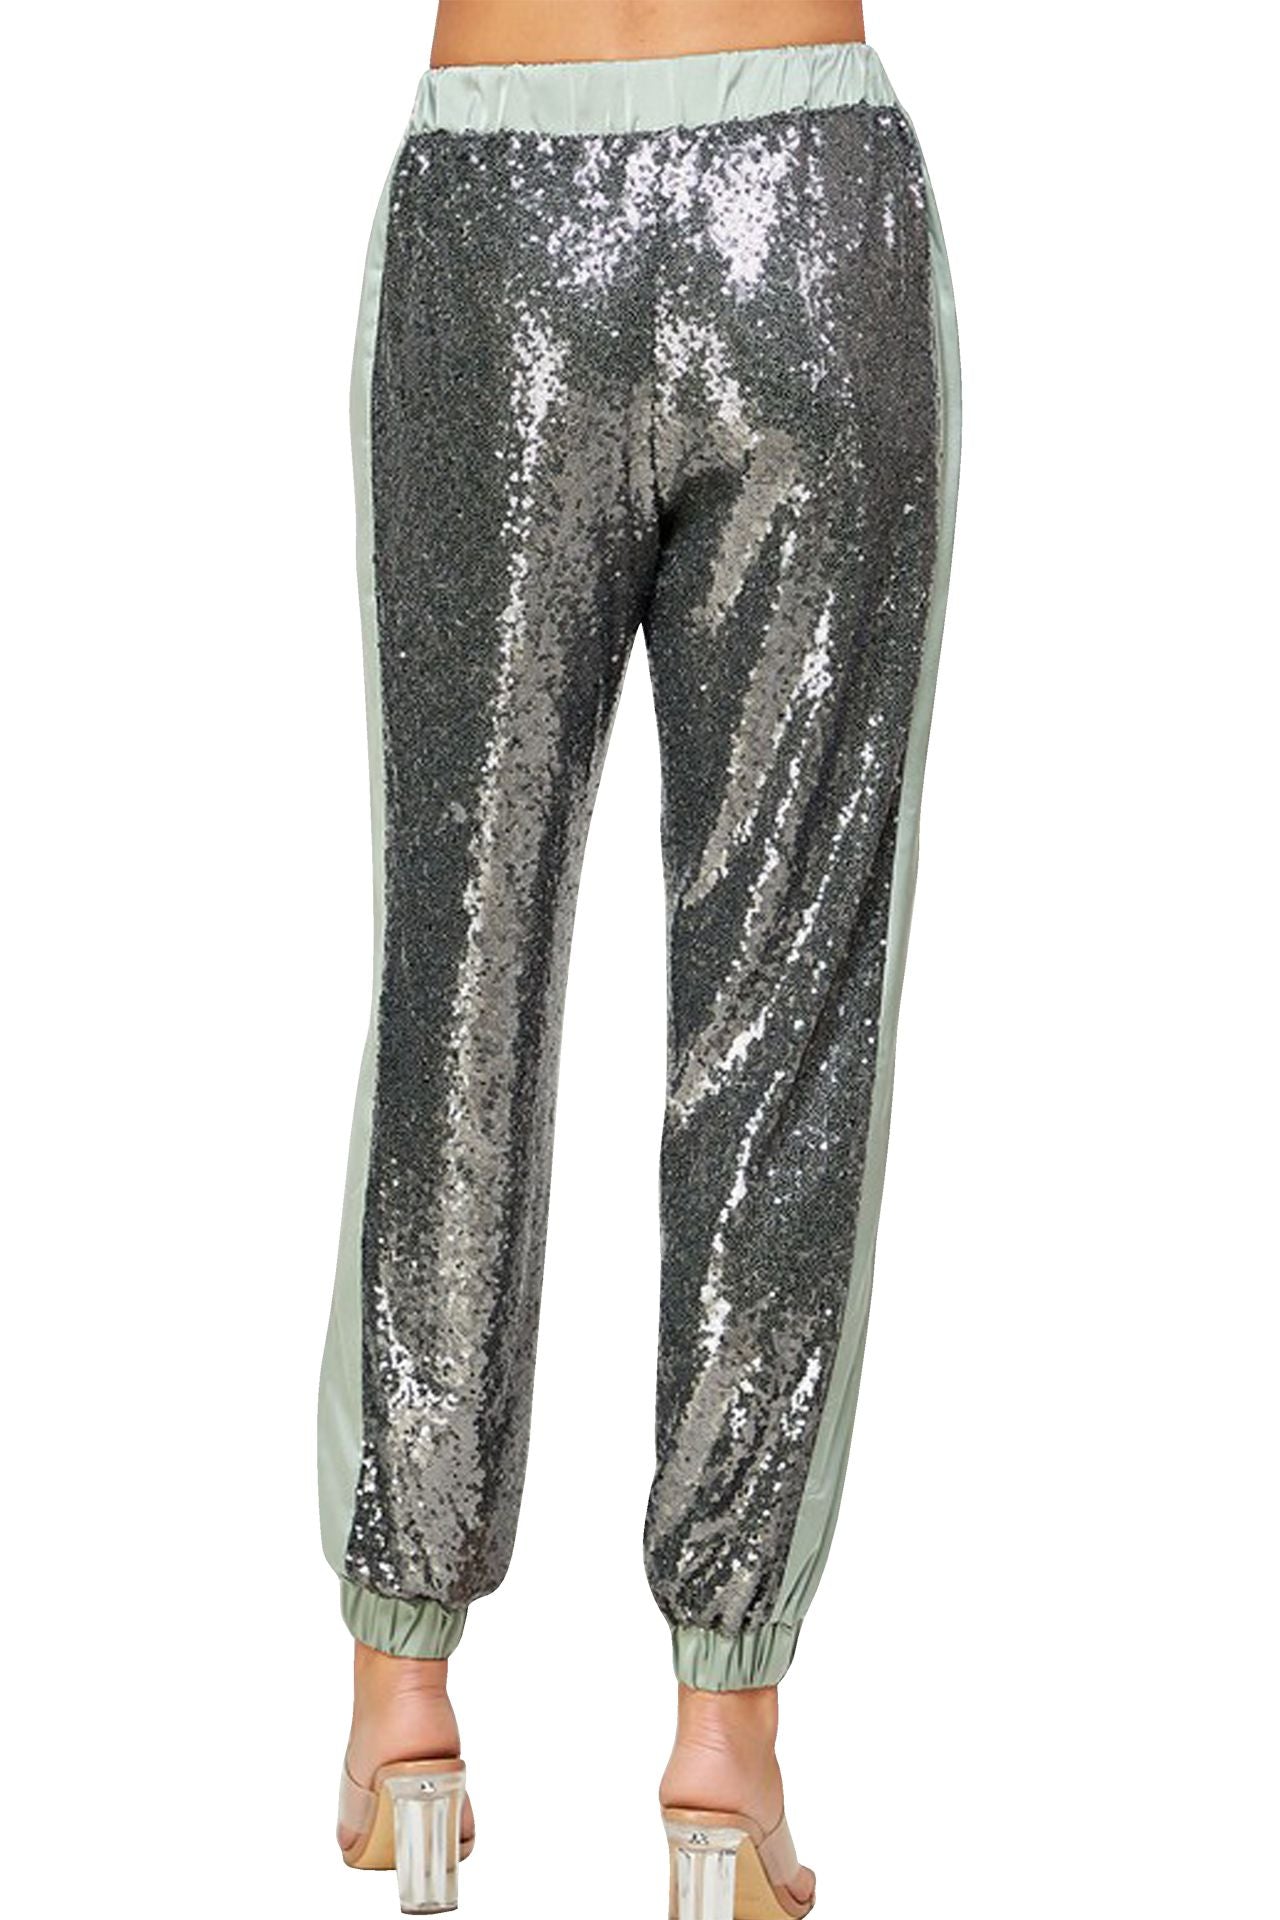 Women's Disco Silver Holographic Leggings - Dimensional Disco - Disco –  Funstigators